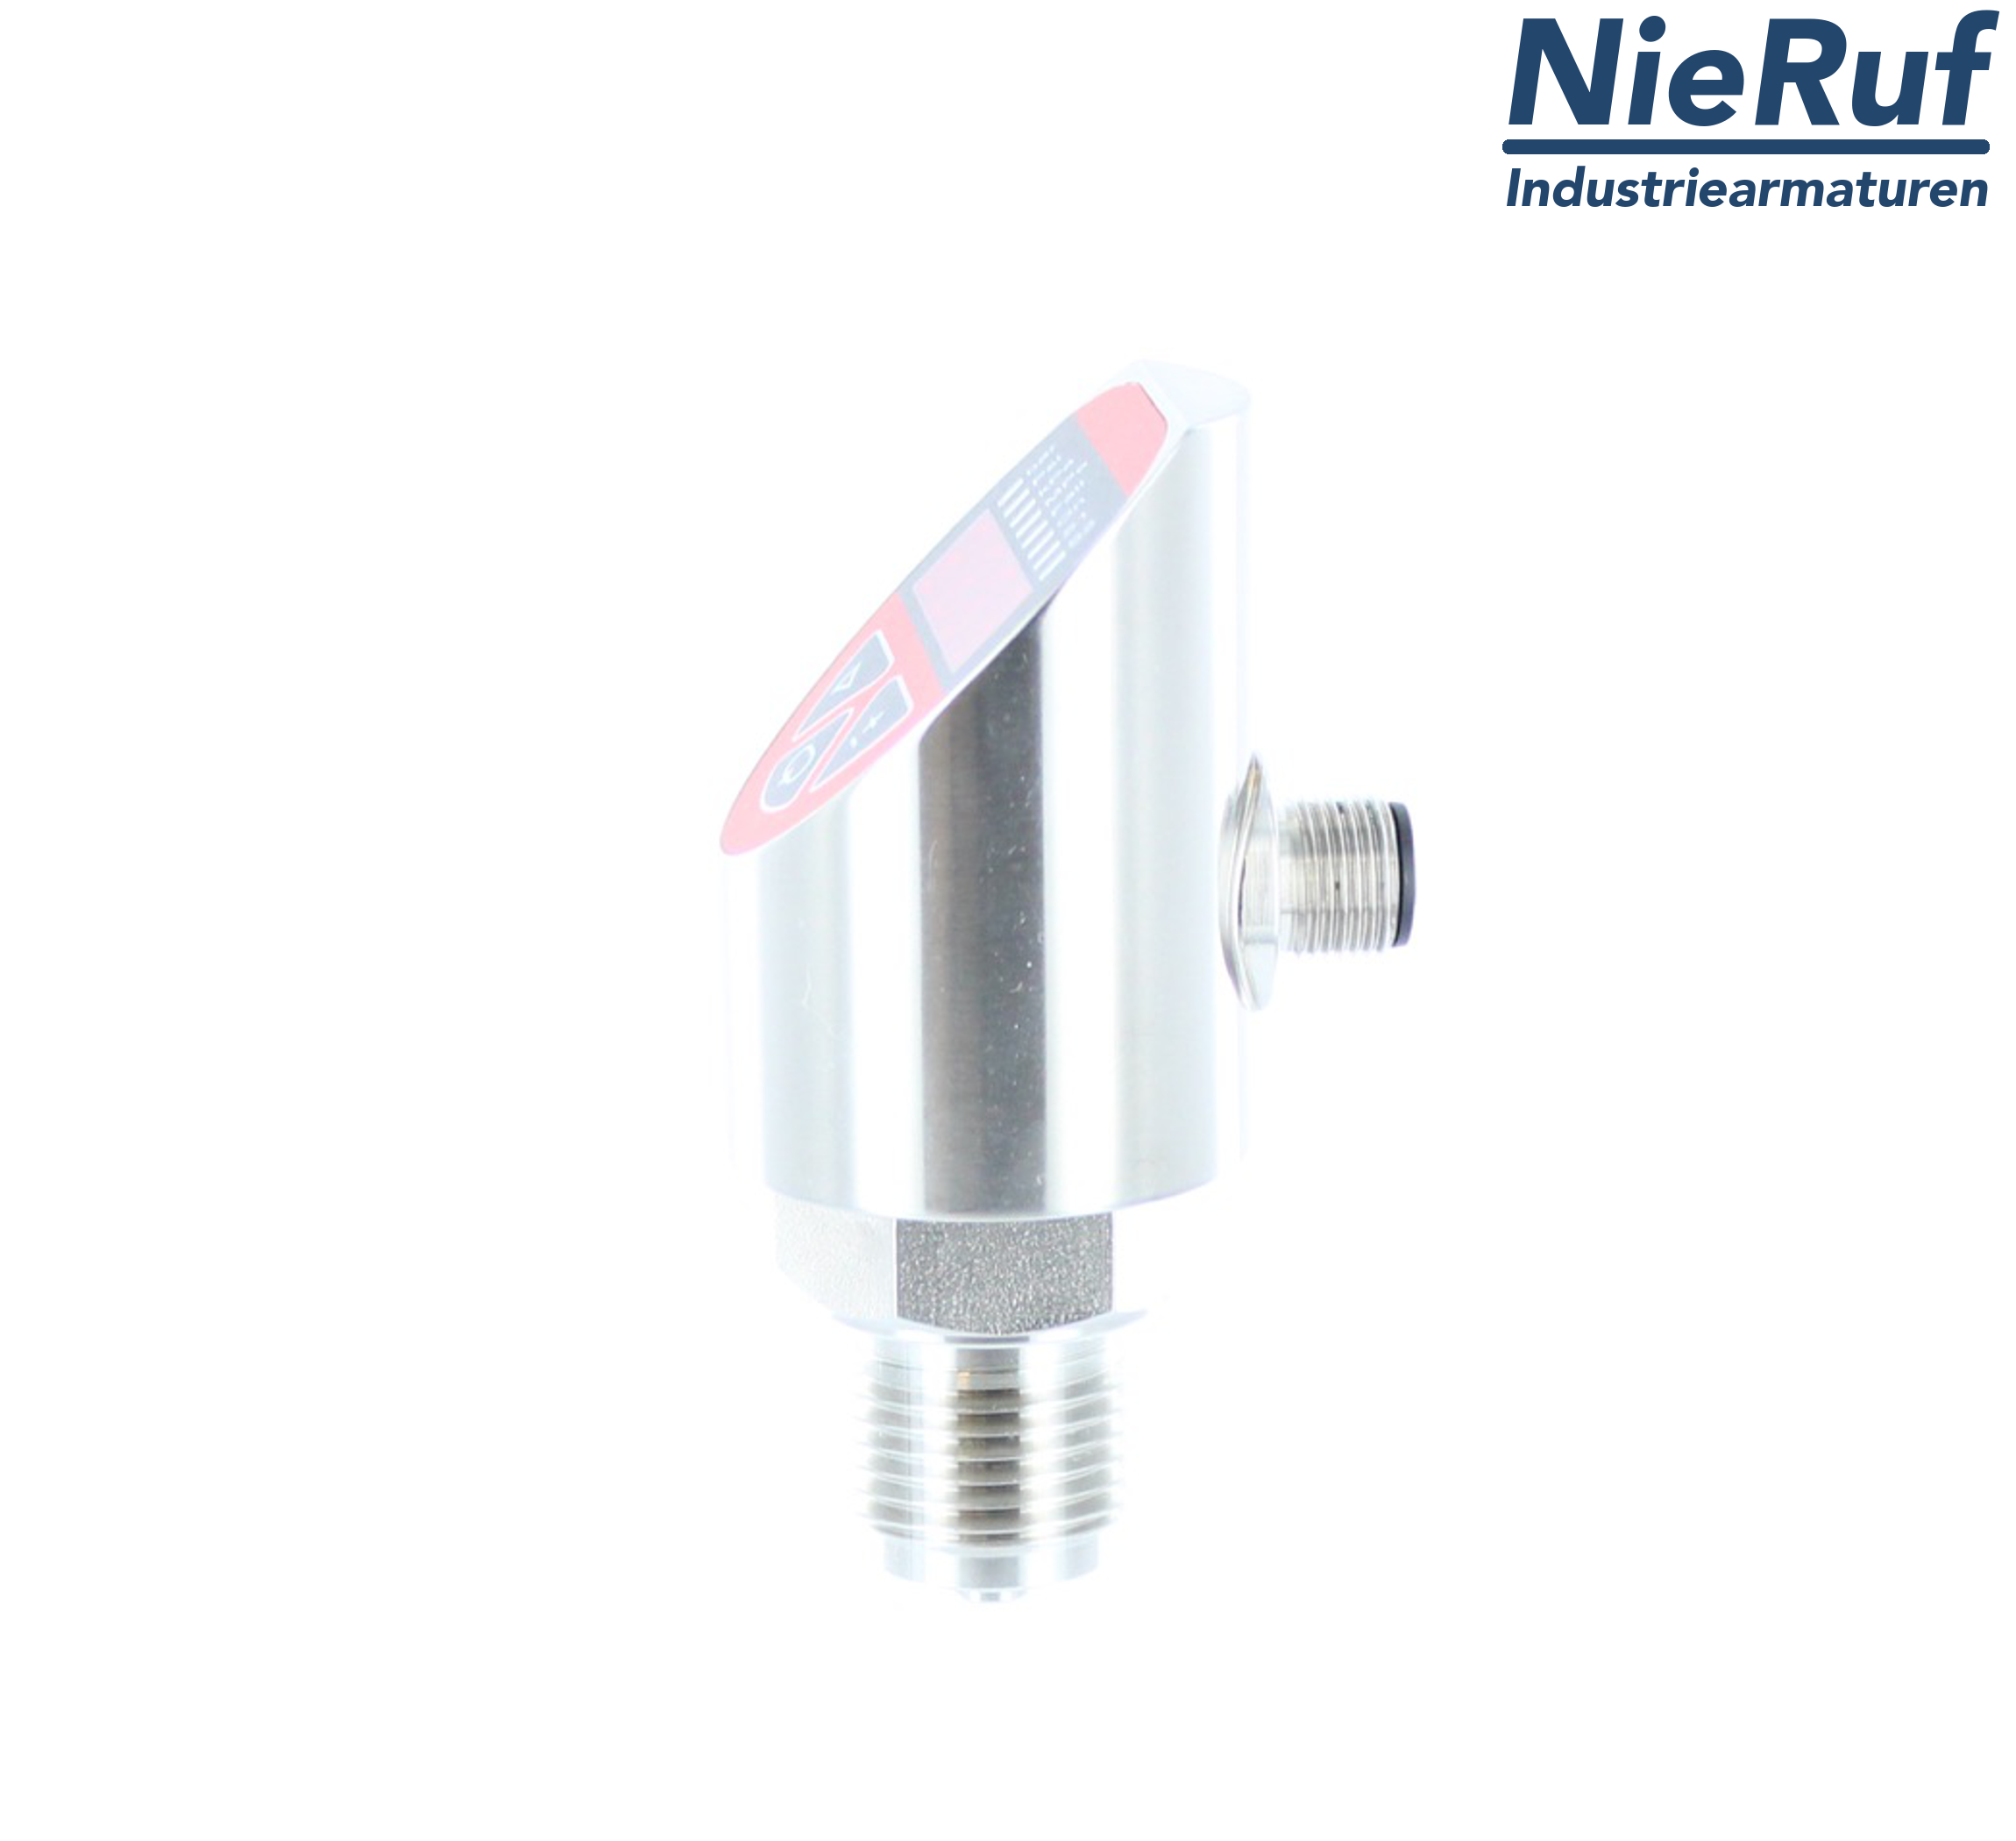 digital pressure sensor G 1/4" B 5-wire: 2xPNP, 1x4 - 20mA FPM 0,0 - 10,0 bar